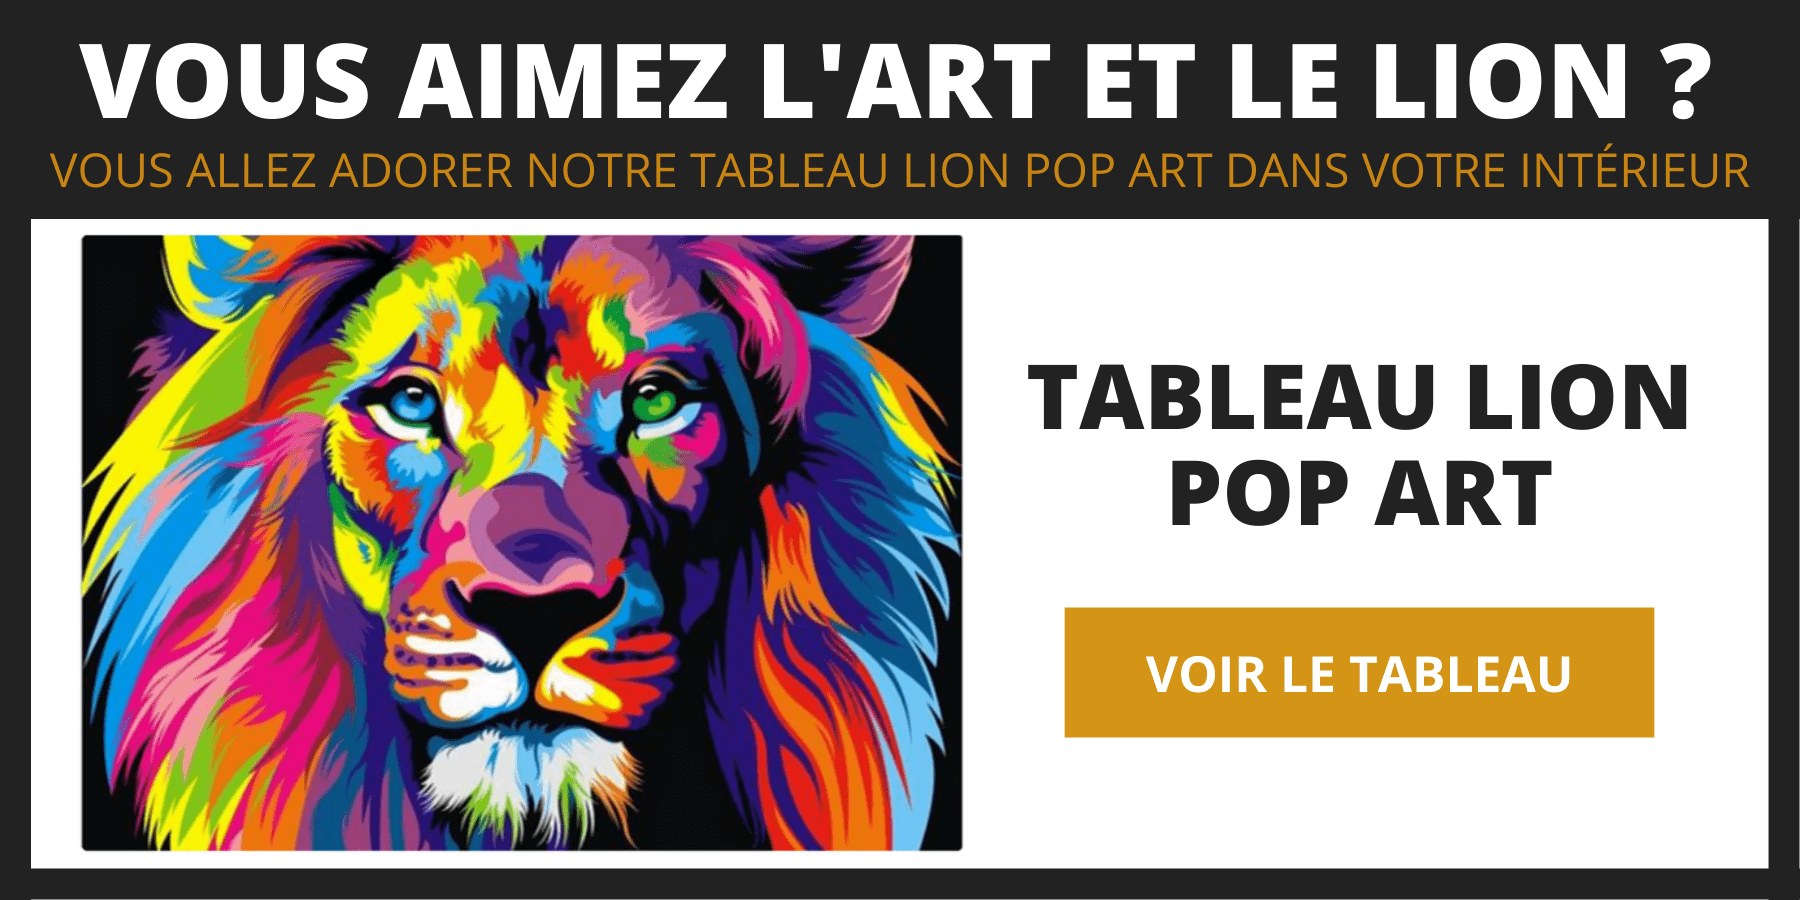 Tableau lion pop art.